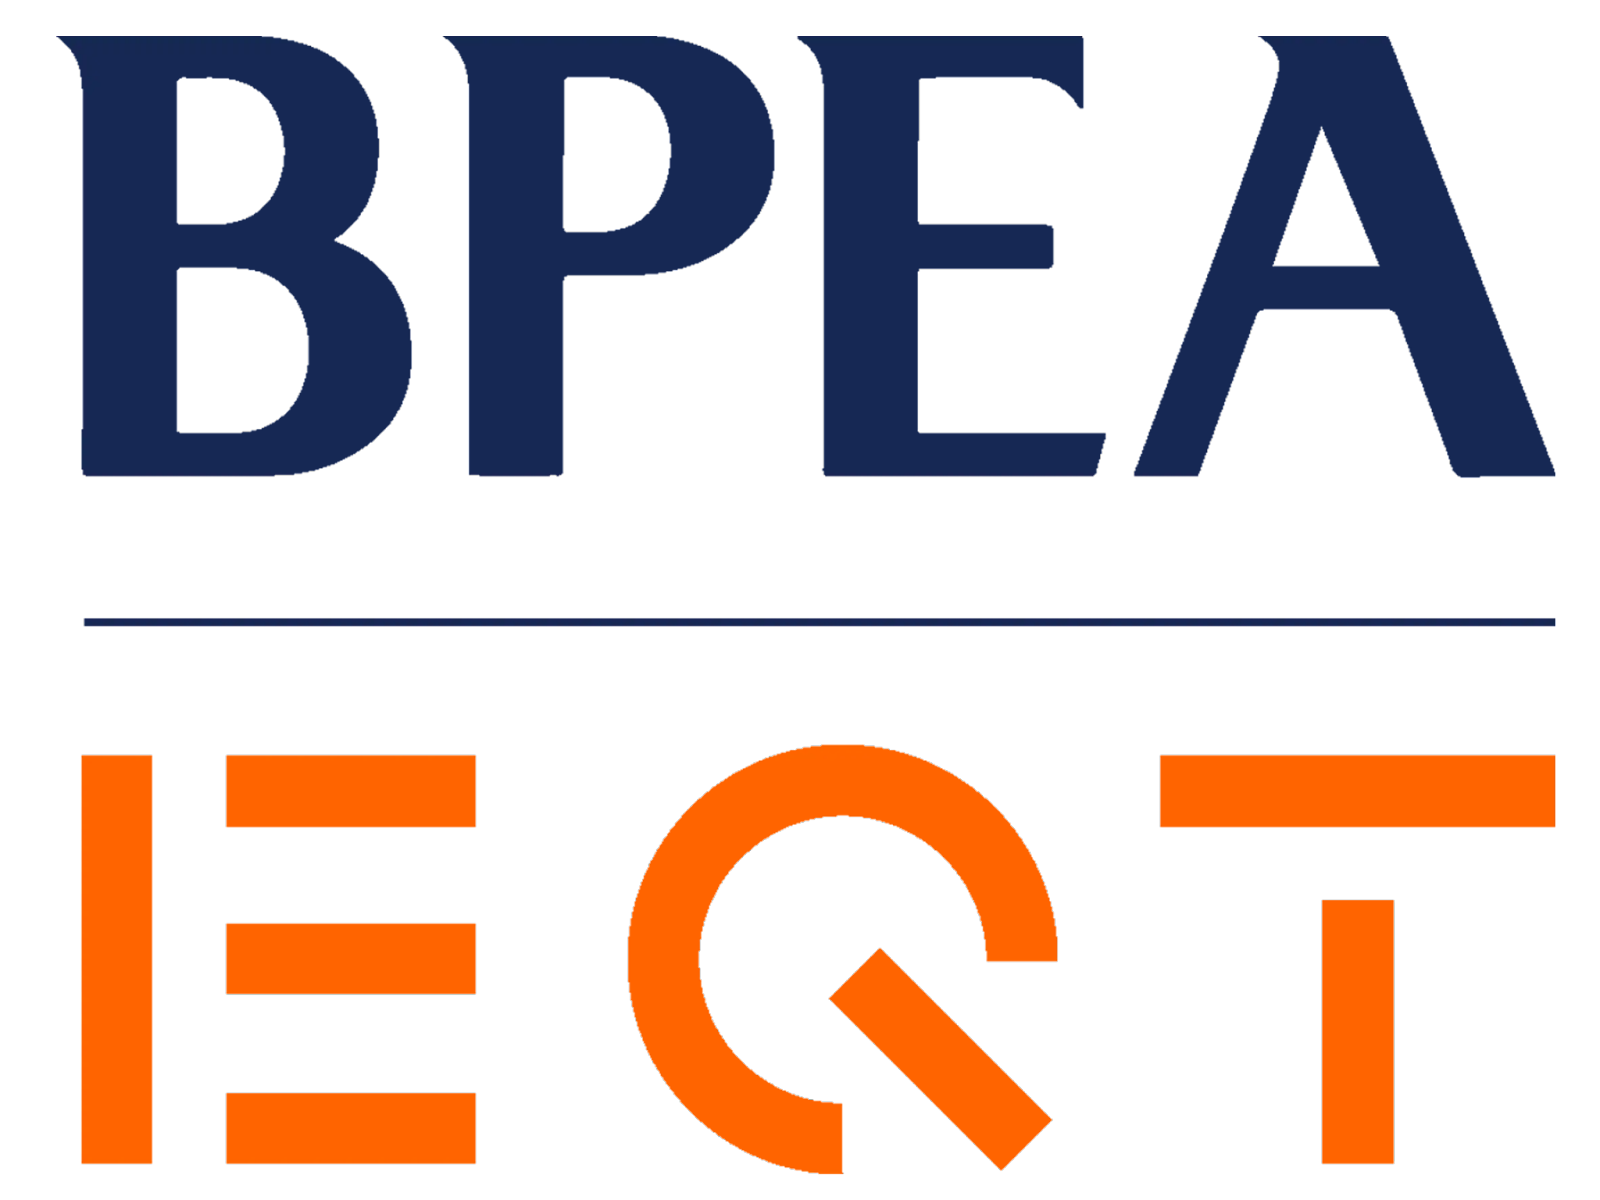 BPEA EQT logo